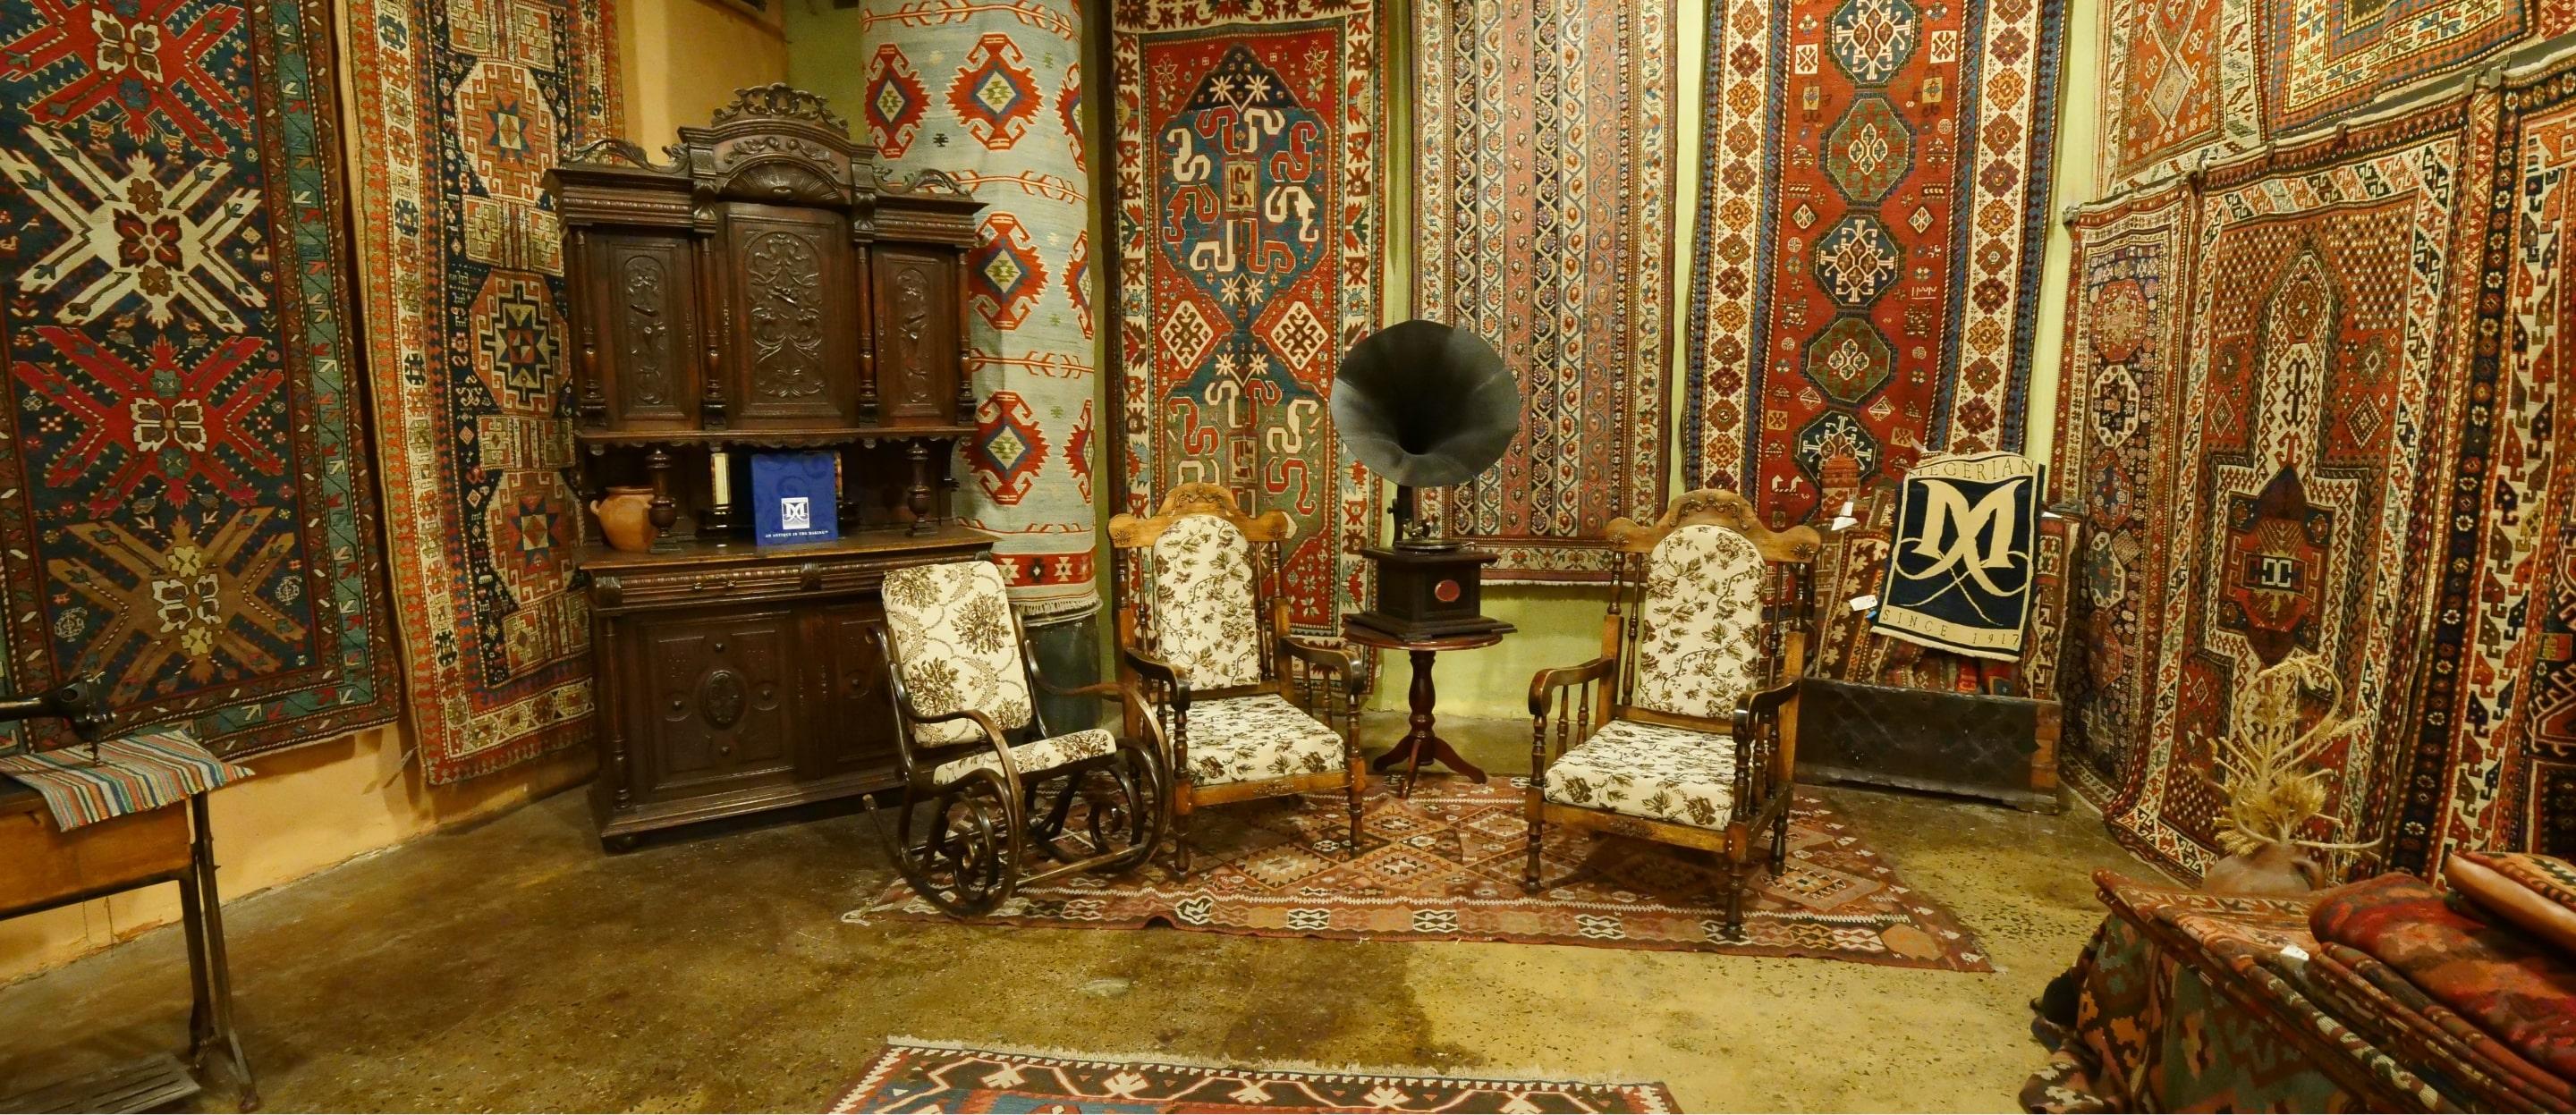 Museums_Megerian Carpet Factory_T-min